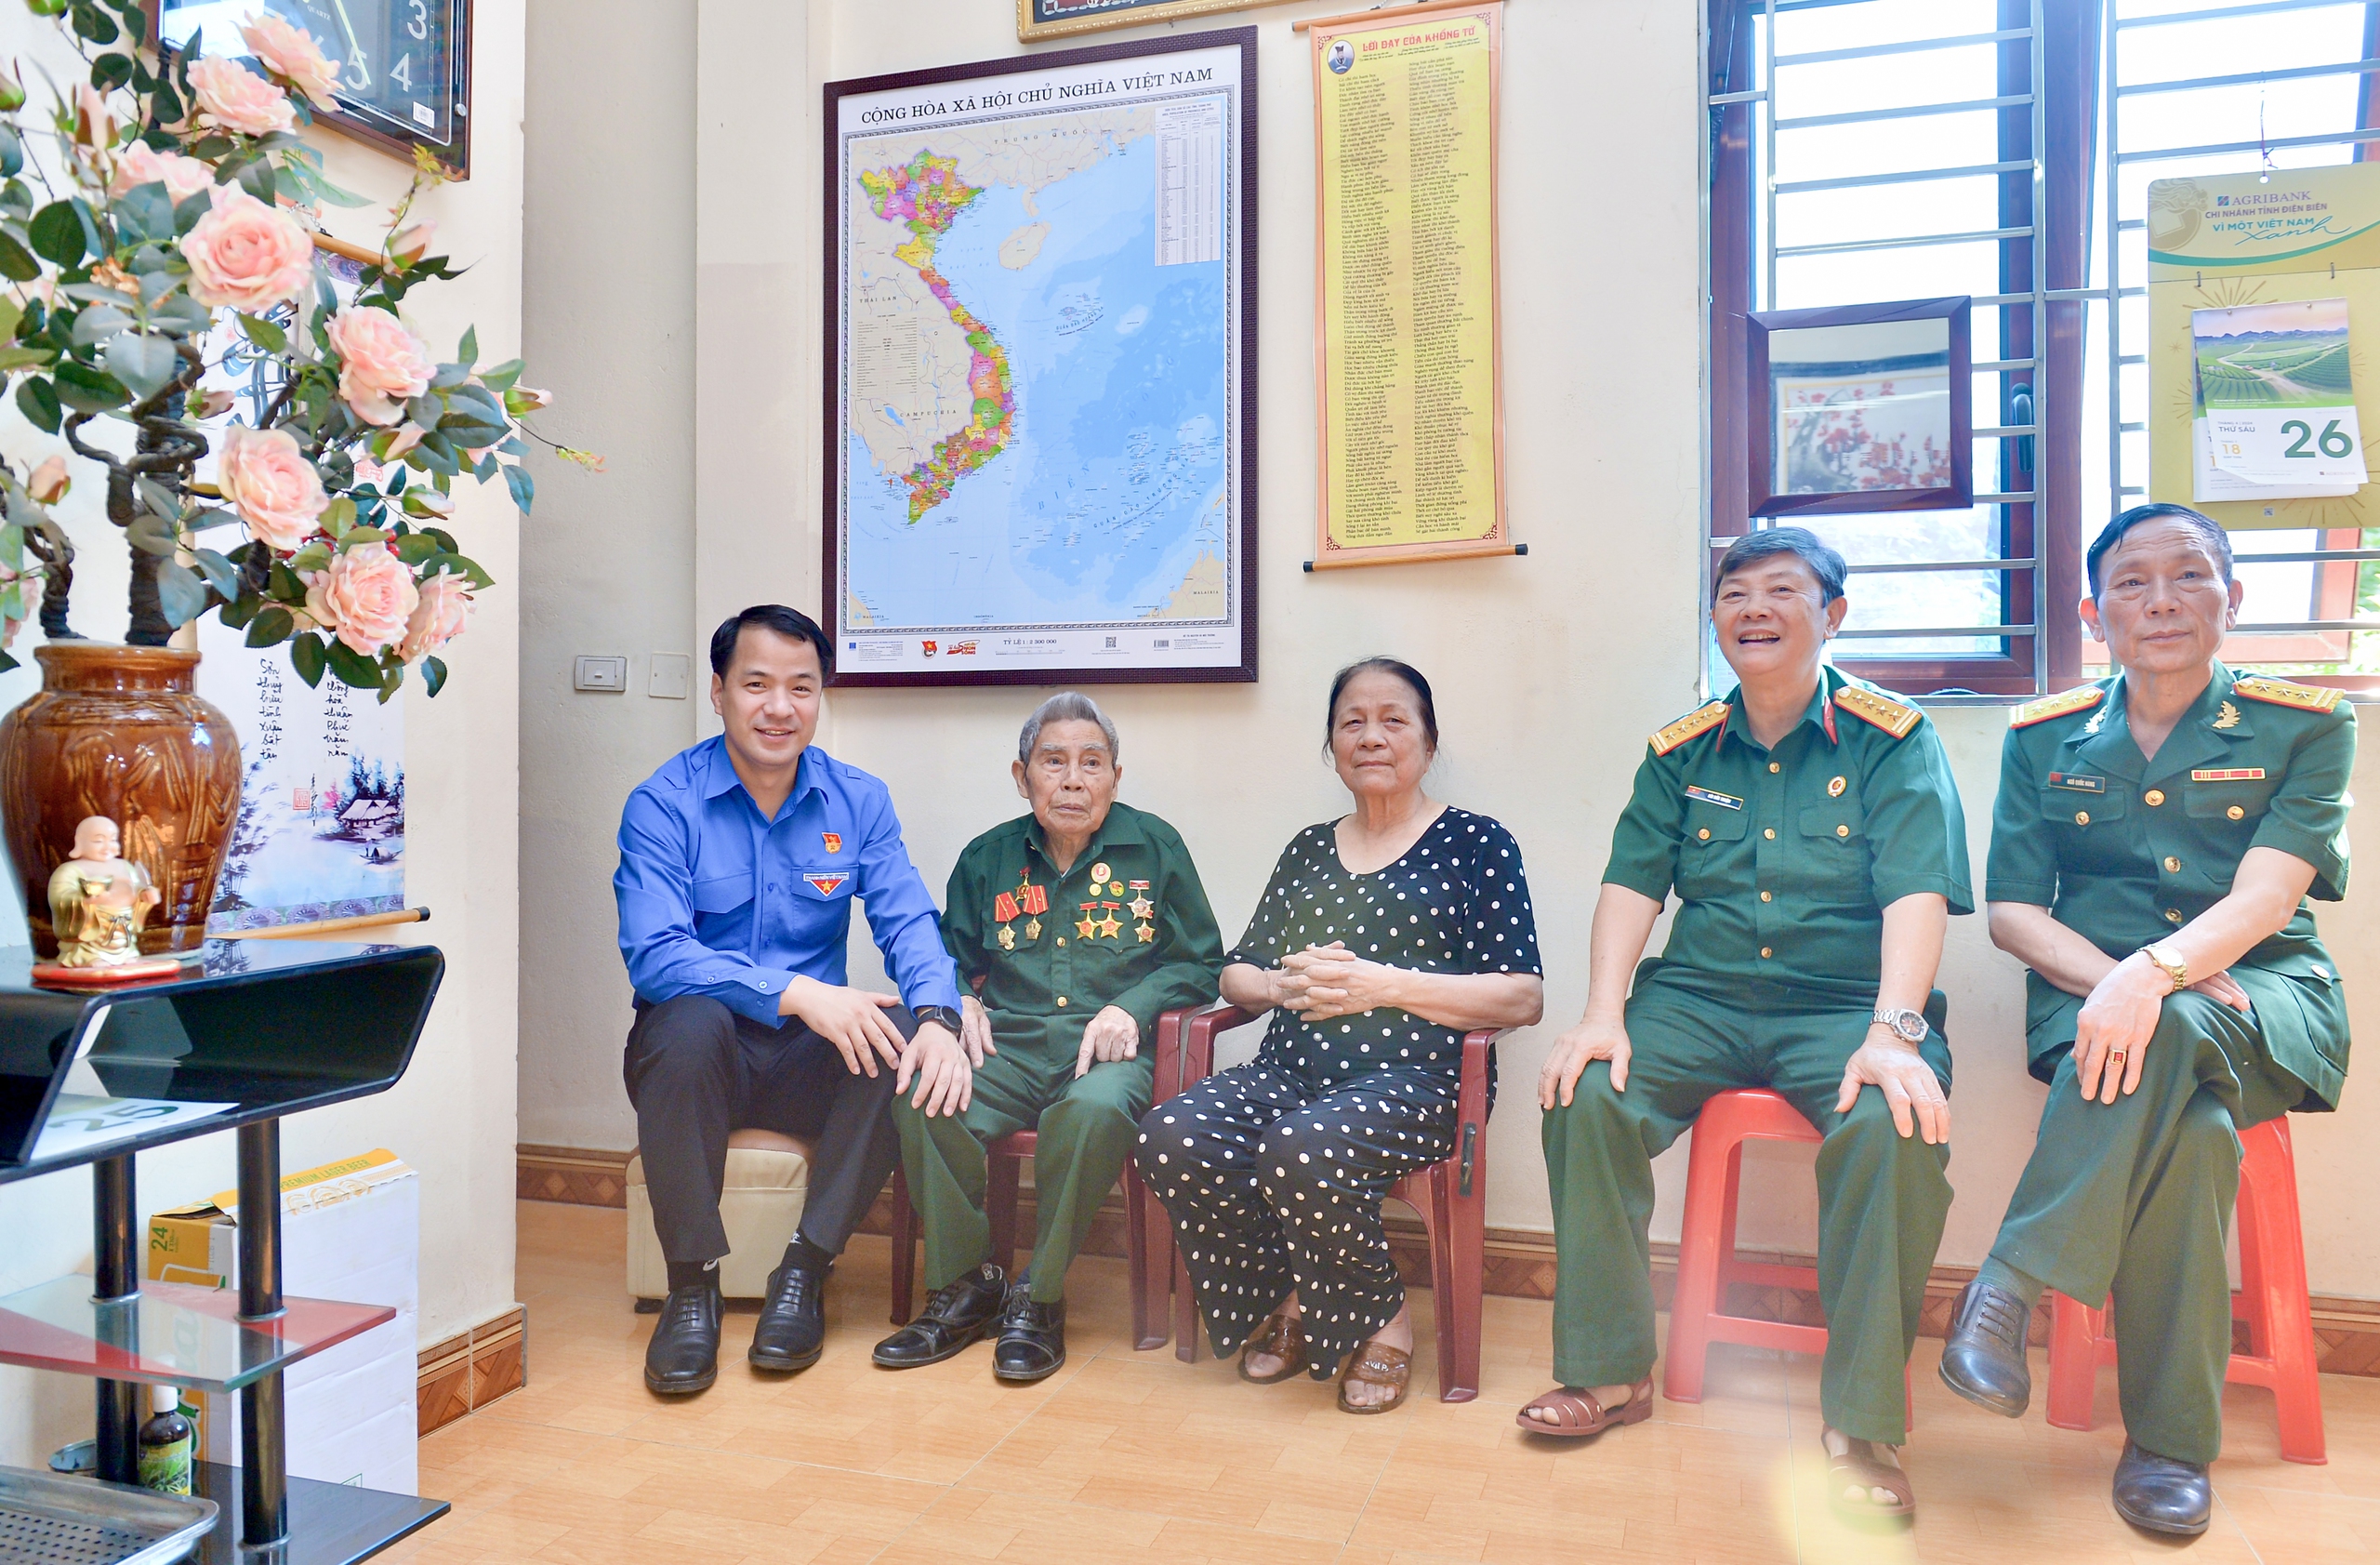 Anh Ngô Văn Cương chụp ảnh cùng vợ chồng ông Kế và cựu chiến binh tại địa phương